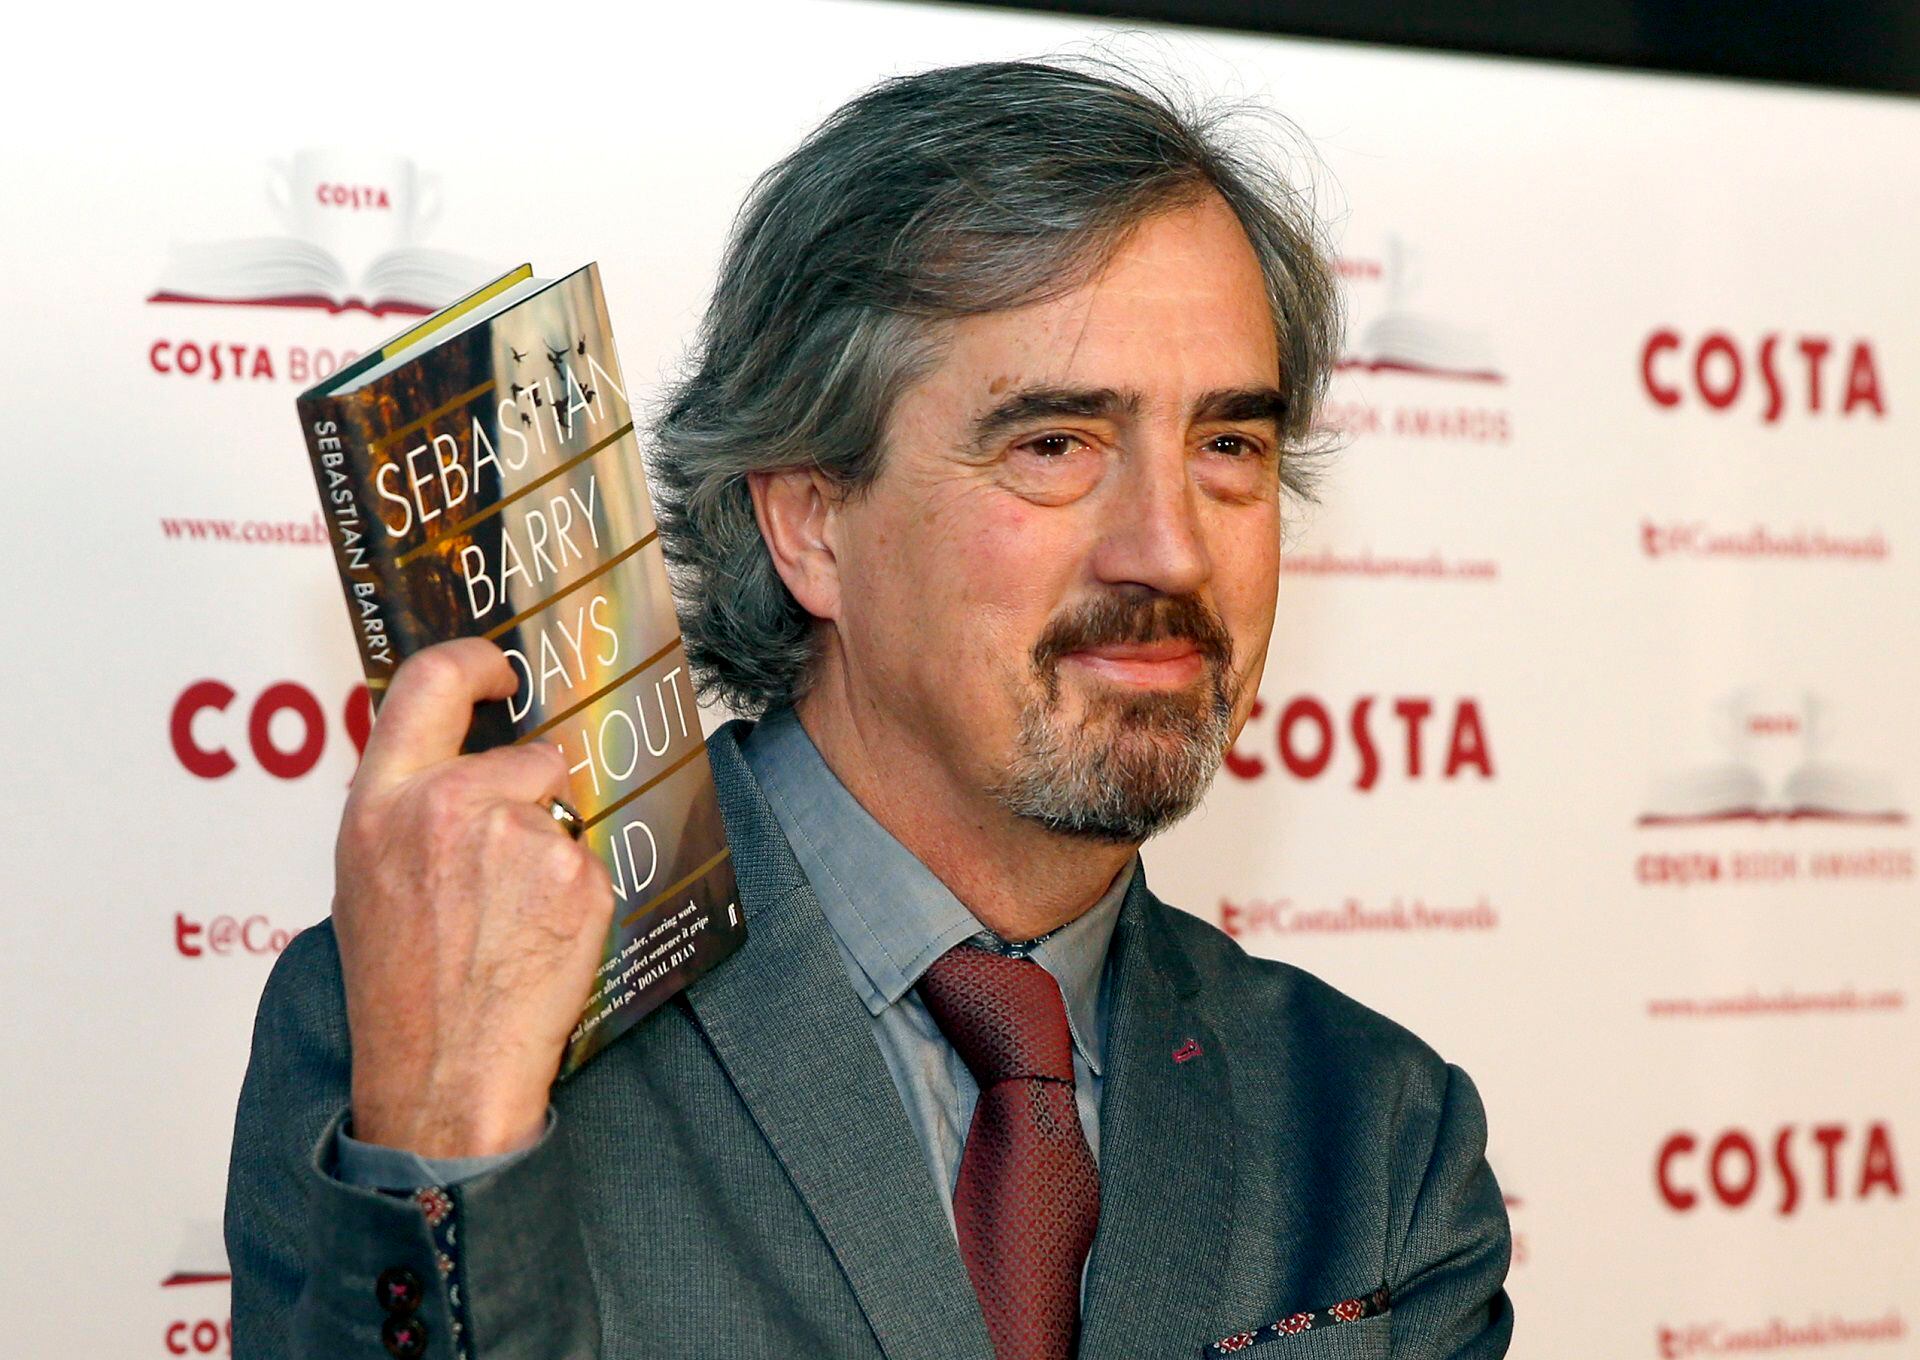 El escritor Sebastian Barry en los Costa Book Awards, en Londres, el 31 de enero de 2017 (AP Photo/Alastair Grant, Archivo)